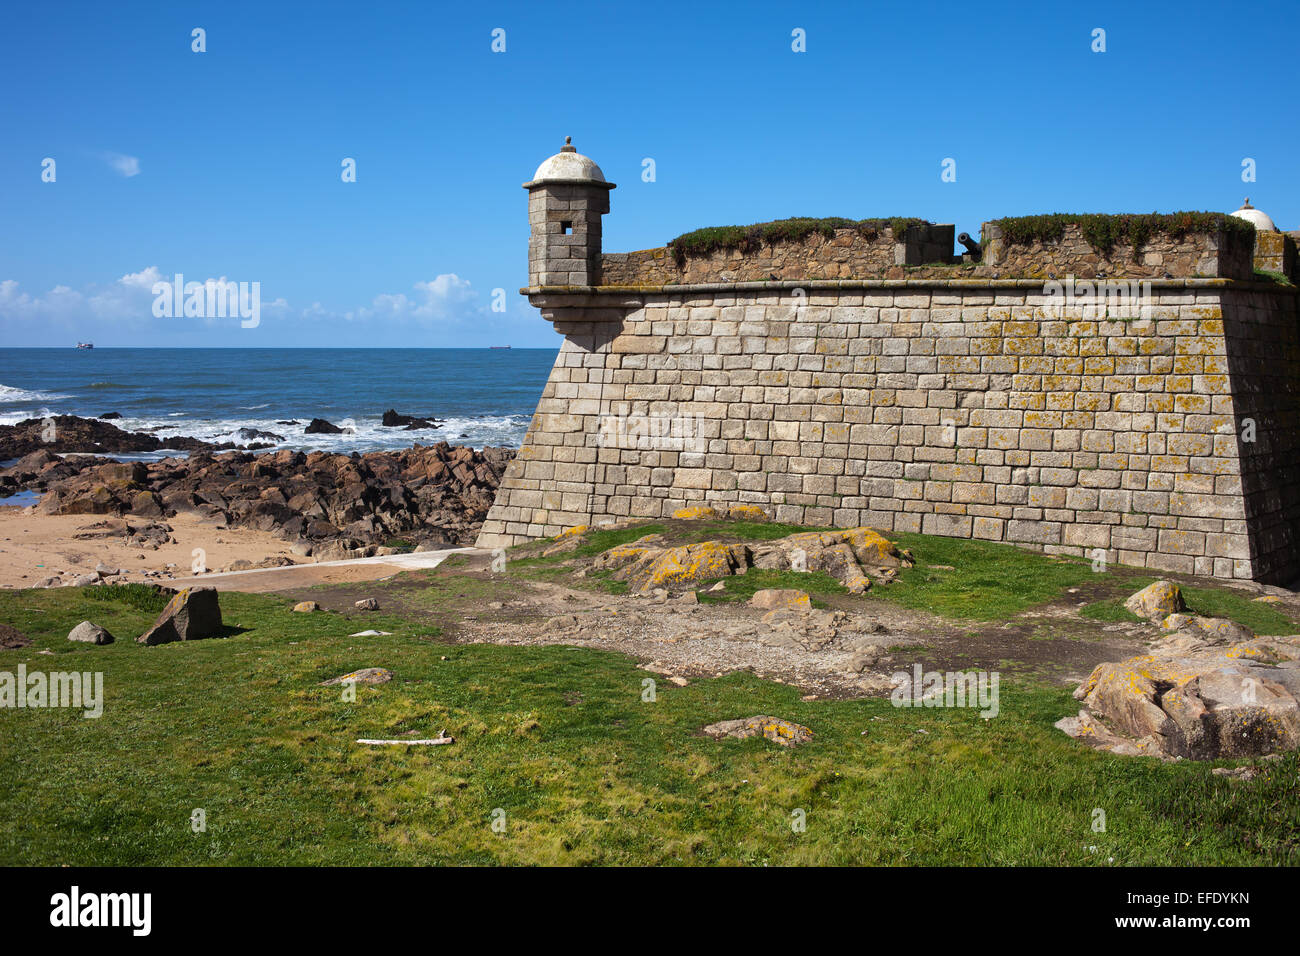 Queijo Castillo (Forte de Sao Francisco Xavier) por el Océano Atlántico en Porto, Portugal. Foto de stock